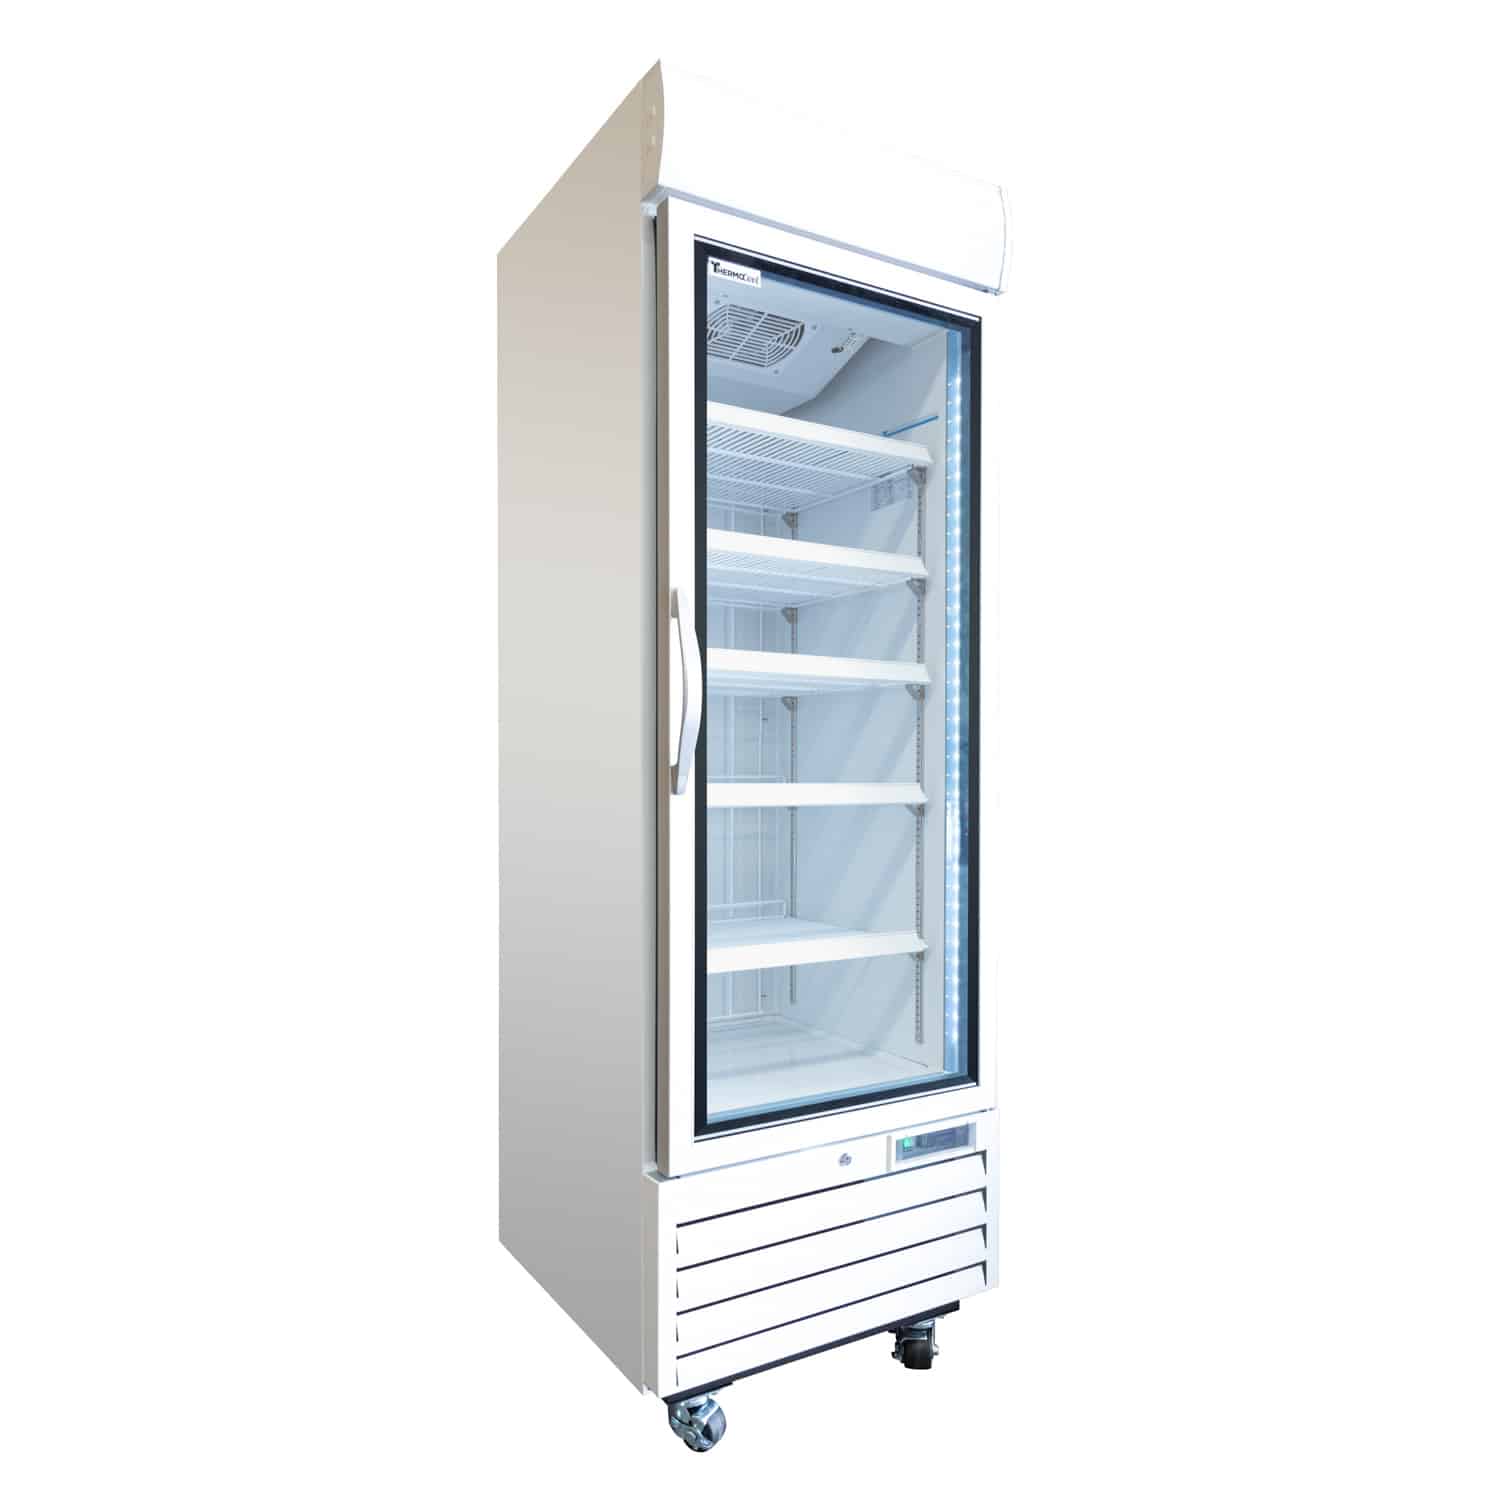 Thermocool Single Door Freezer, White 430L